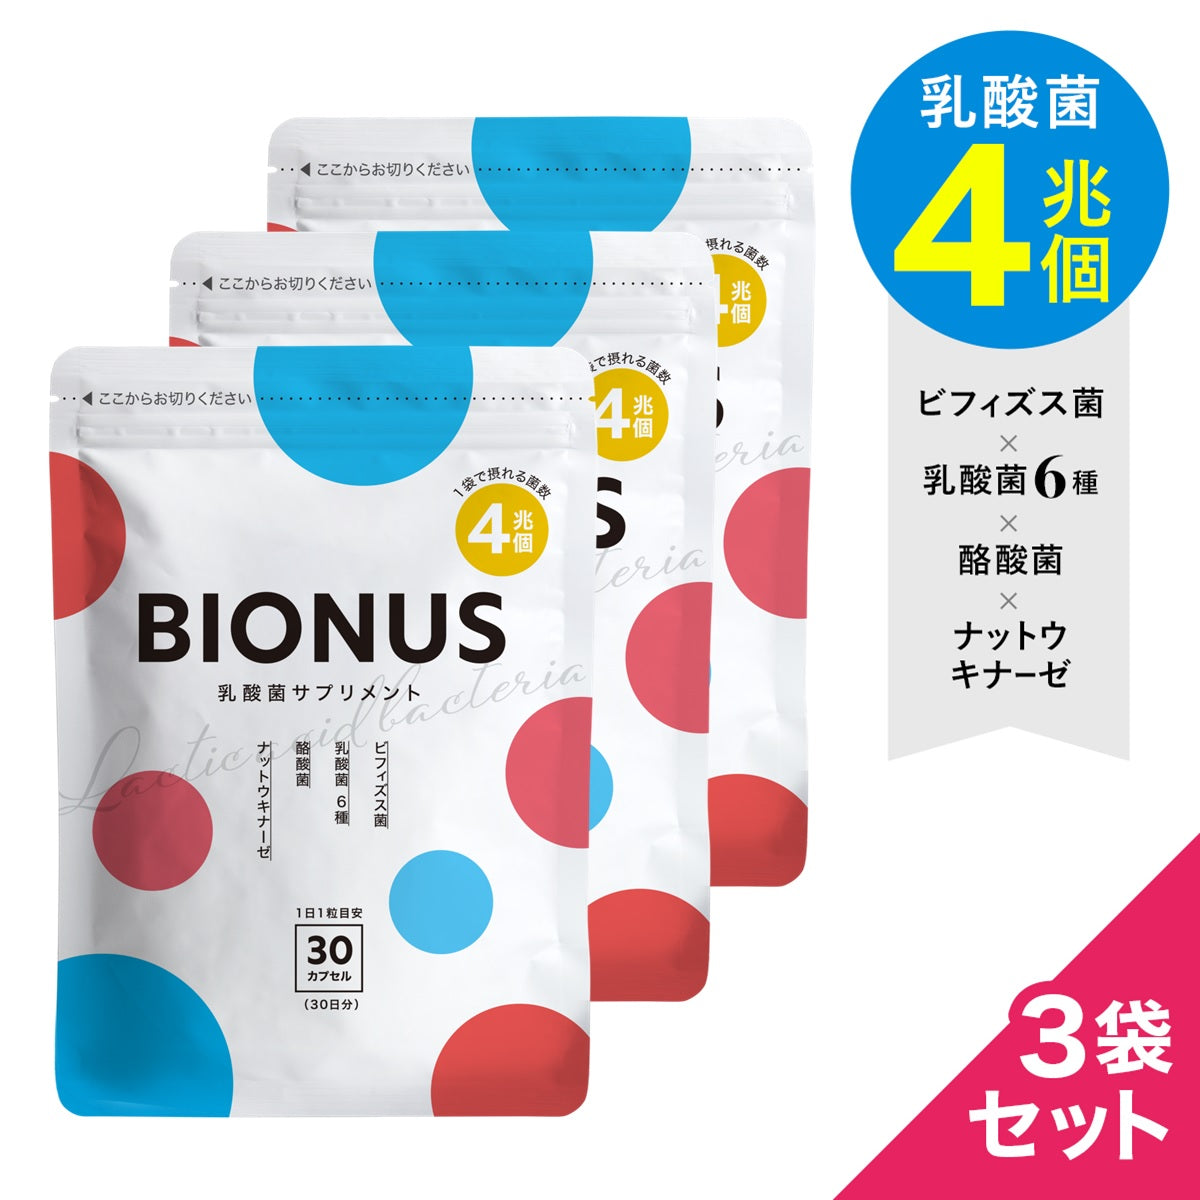 ビオナス 乳酸菌サプリ3袋セット – ビオナス公式オンラインショップ